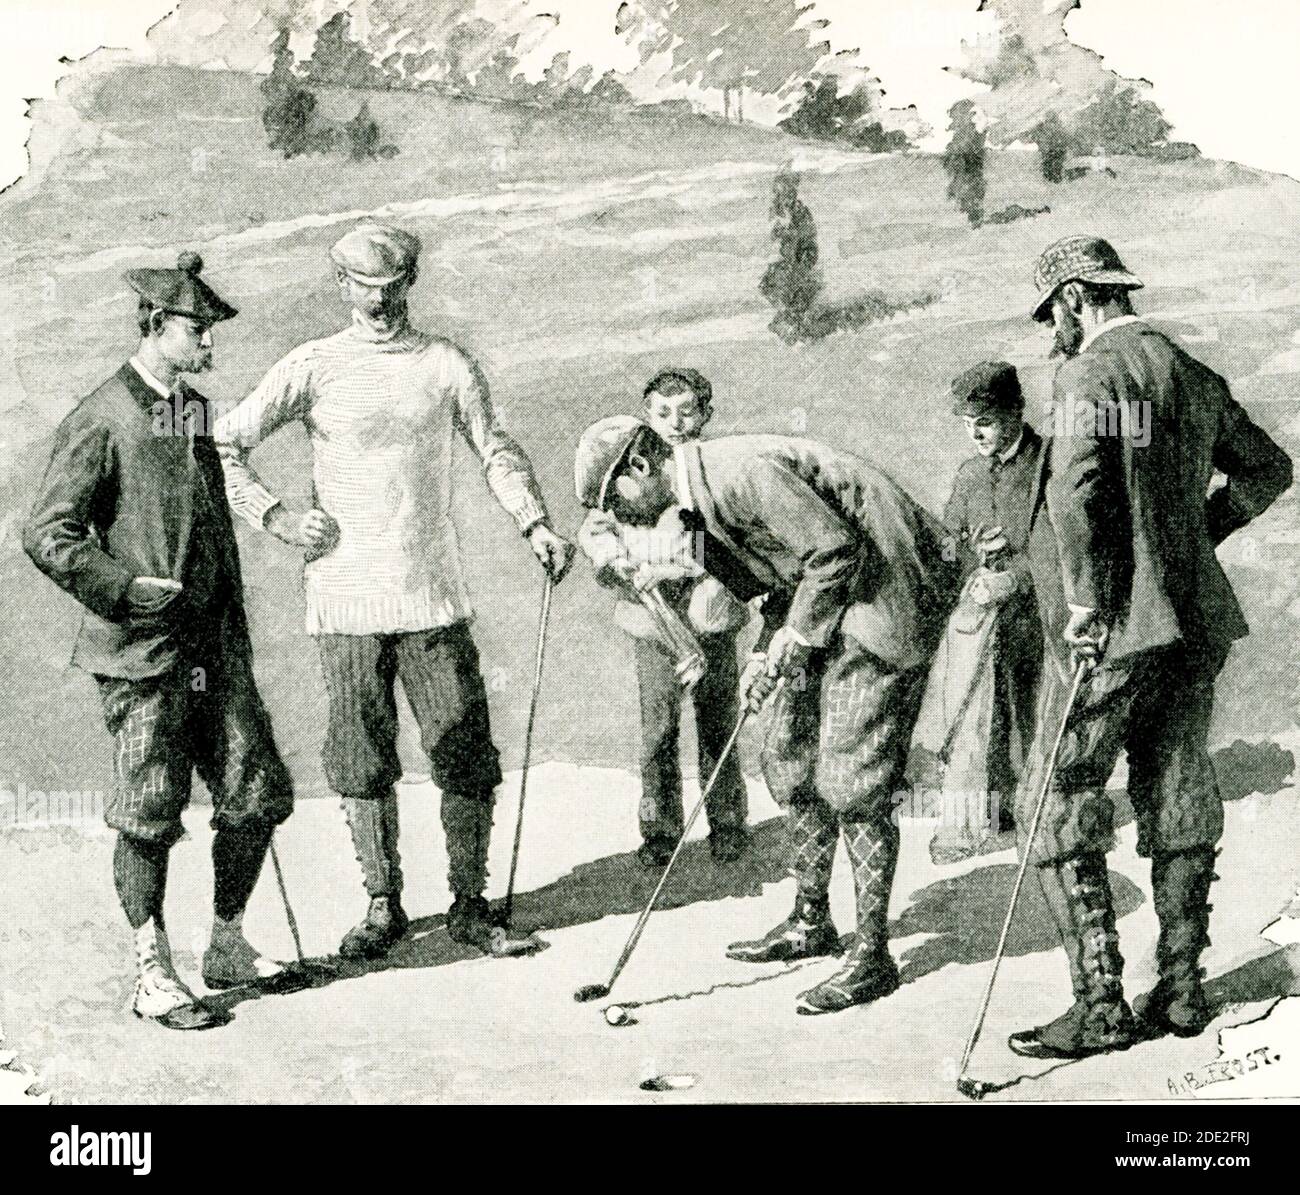 Cette illustration de 1897 d'hommes jouant au golf dans un club de campagne montre les différents wrapings de jambe portés à l'époque. Banque D'Images